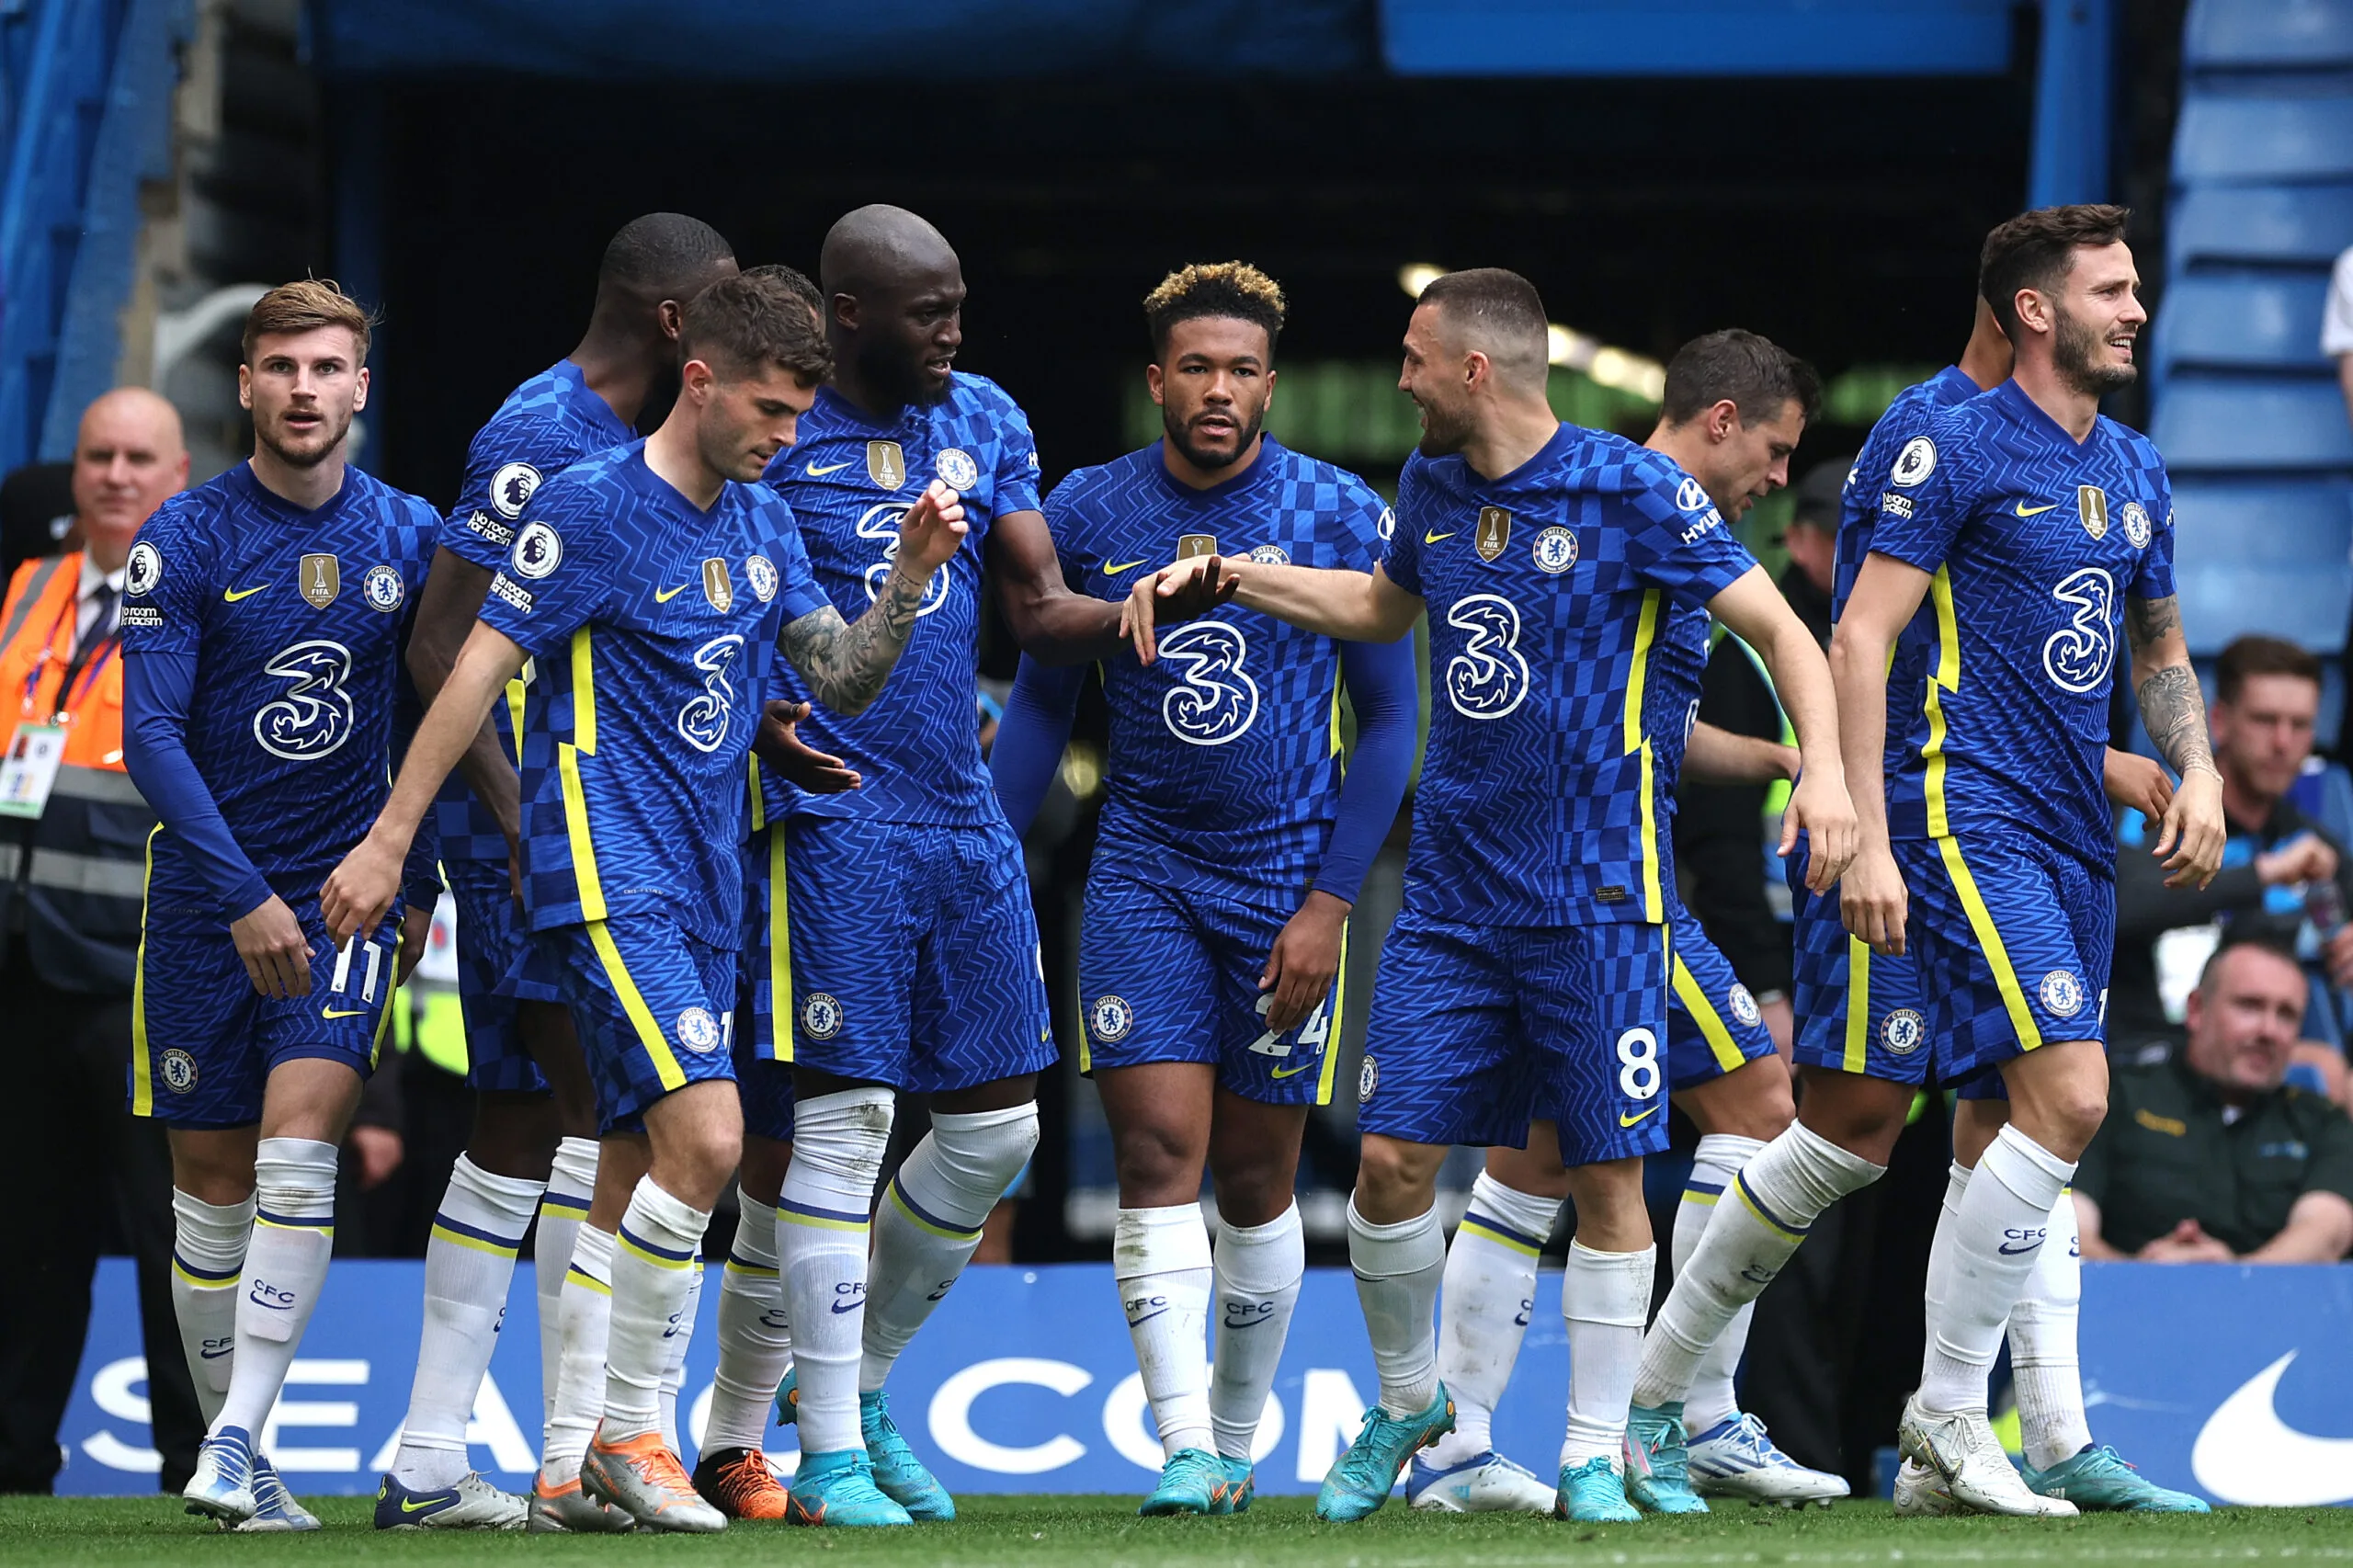 Everton vs Chelsea Predictions, Game Preview, Live Stream, Odds & Picks